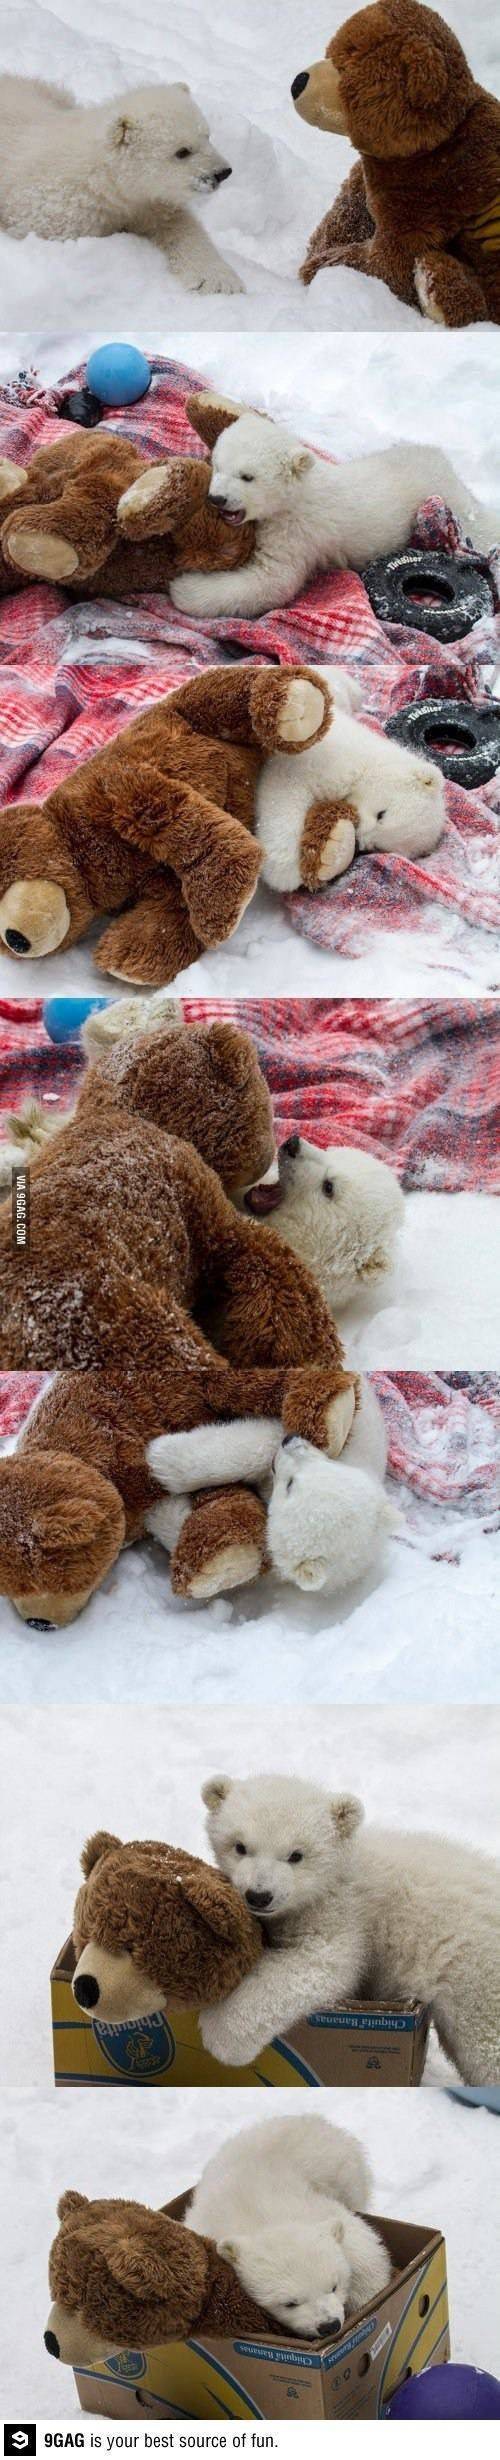 백곰과 불곰의 처절한 사투.jpg